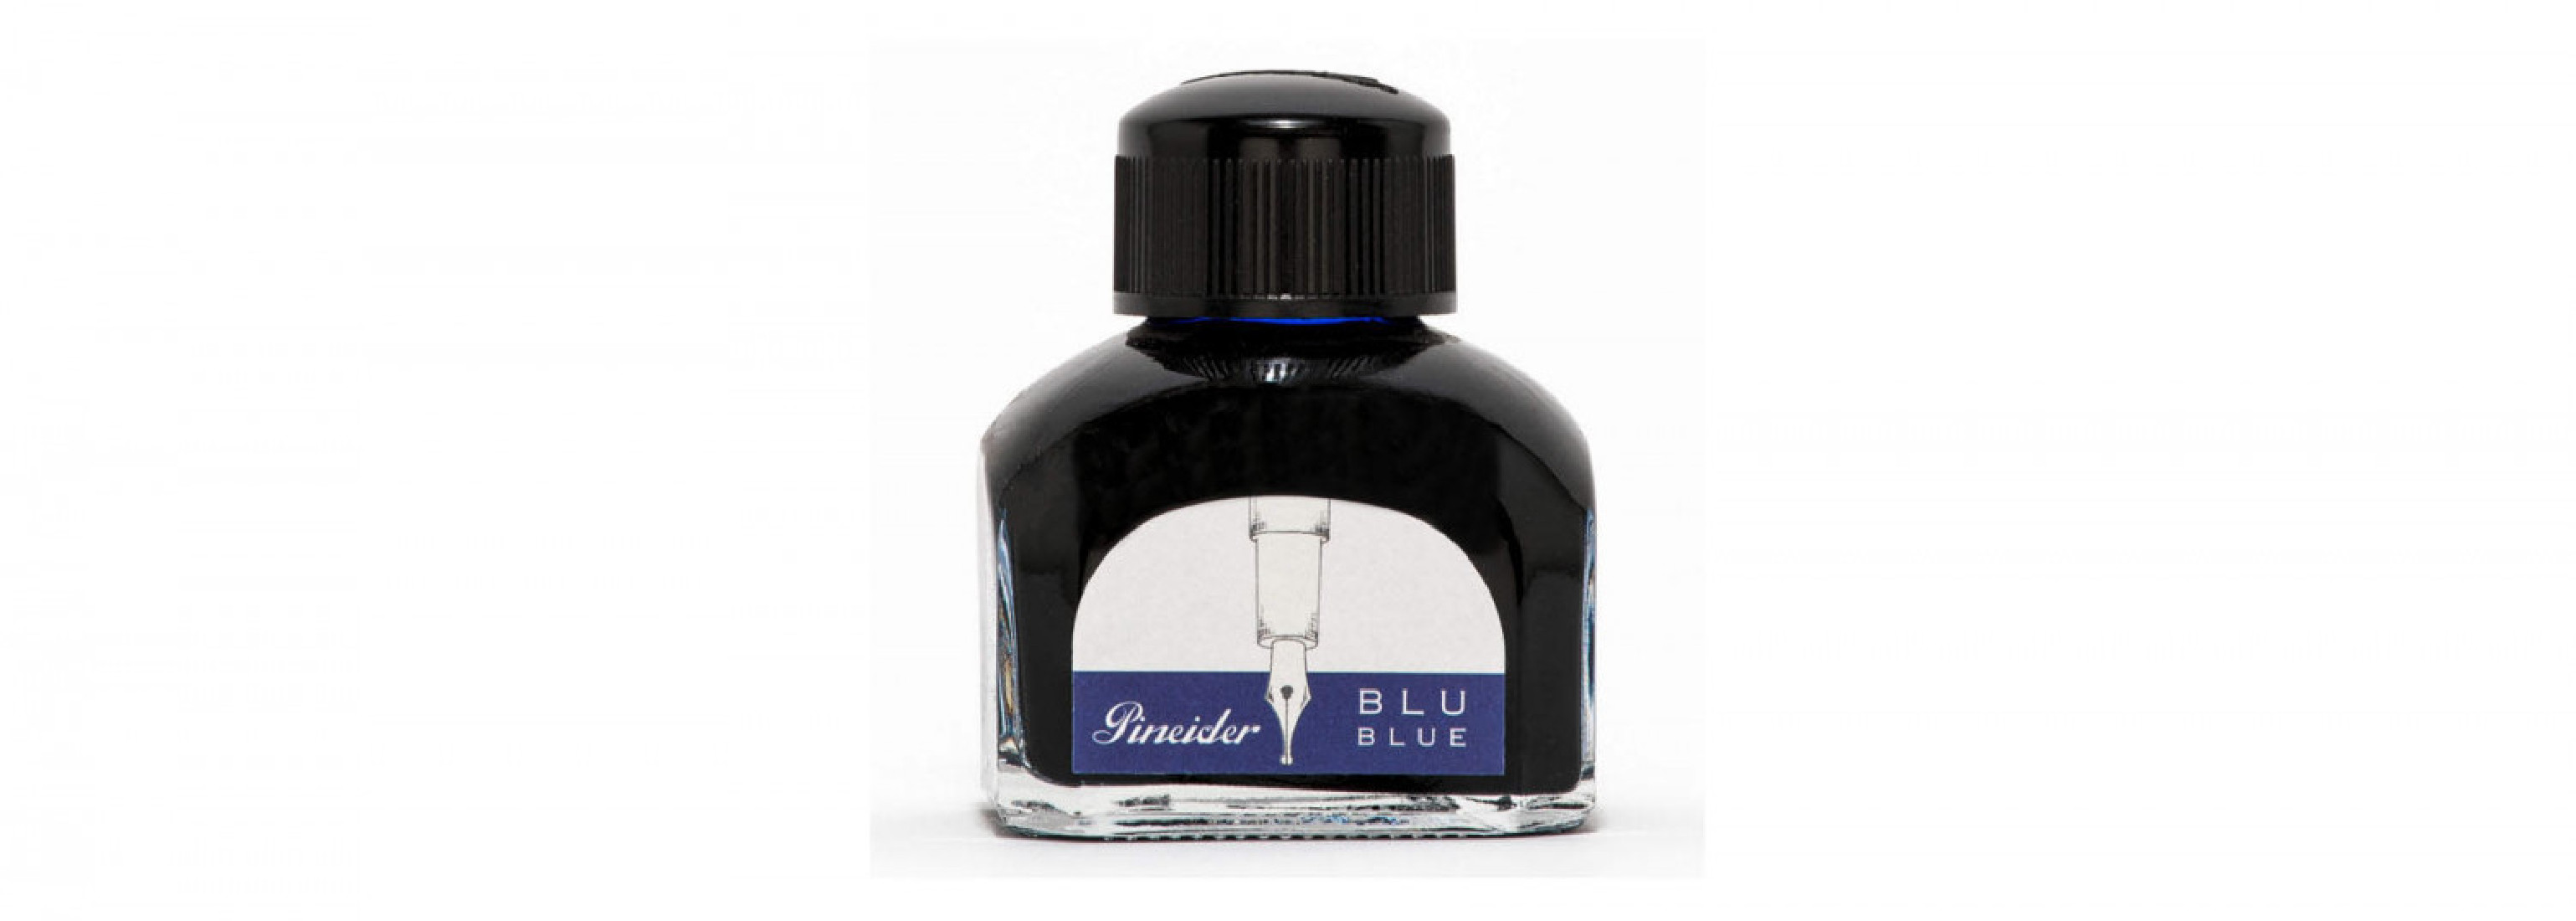 Pineider ink well 75ml blue